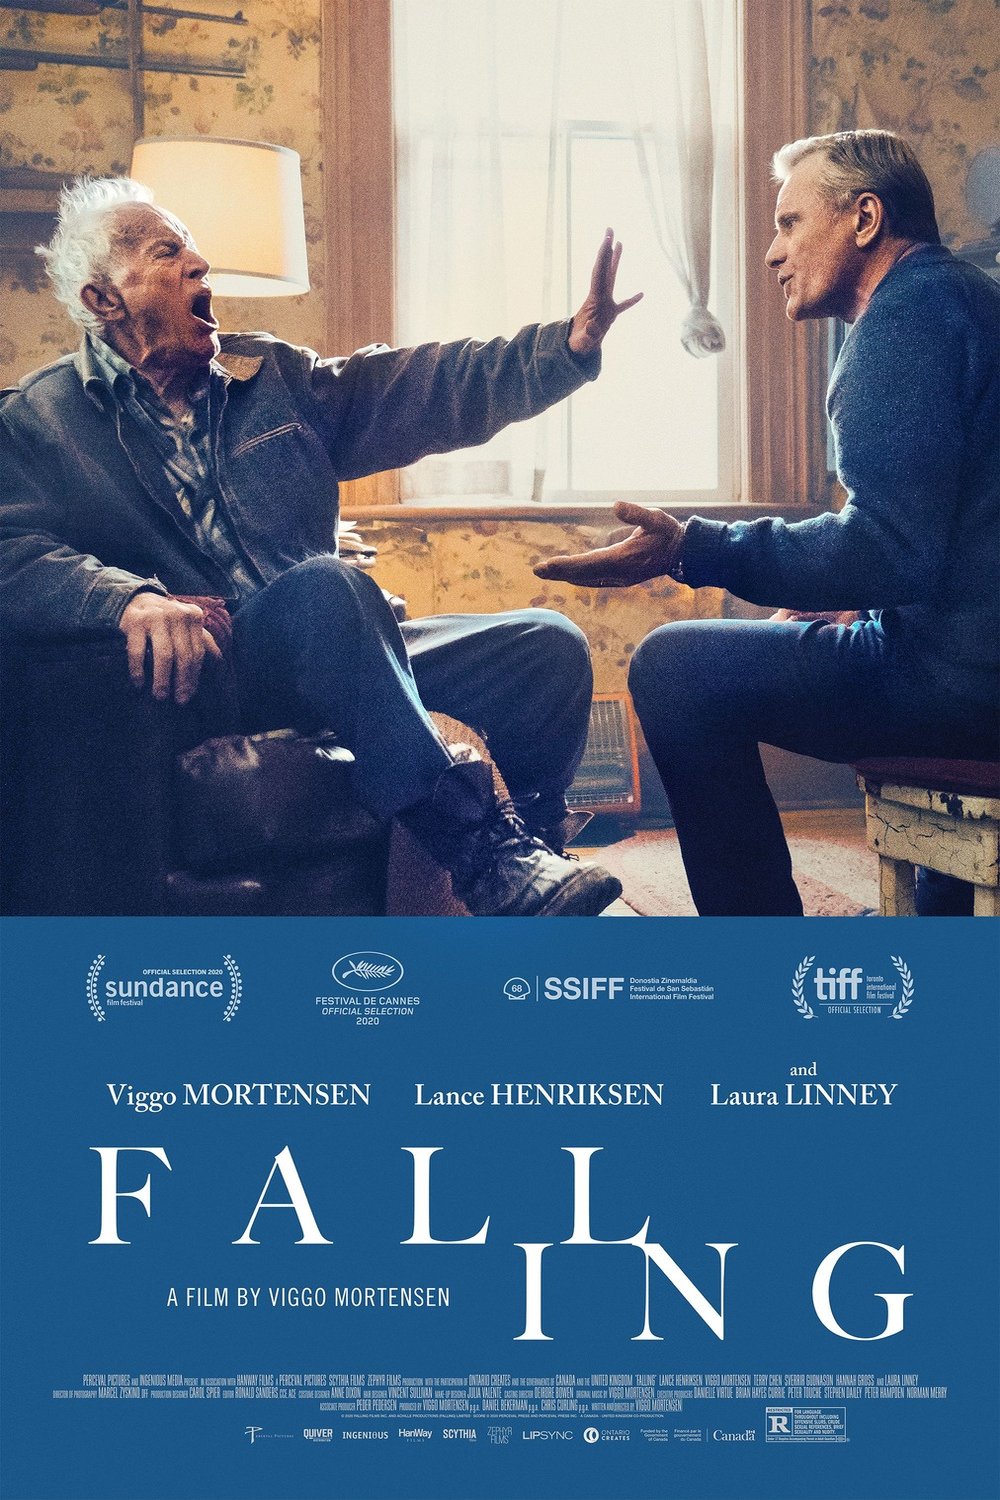 L'affiche du film Falling